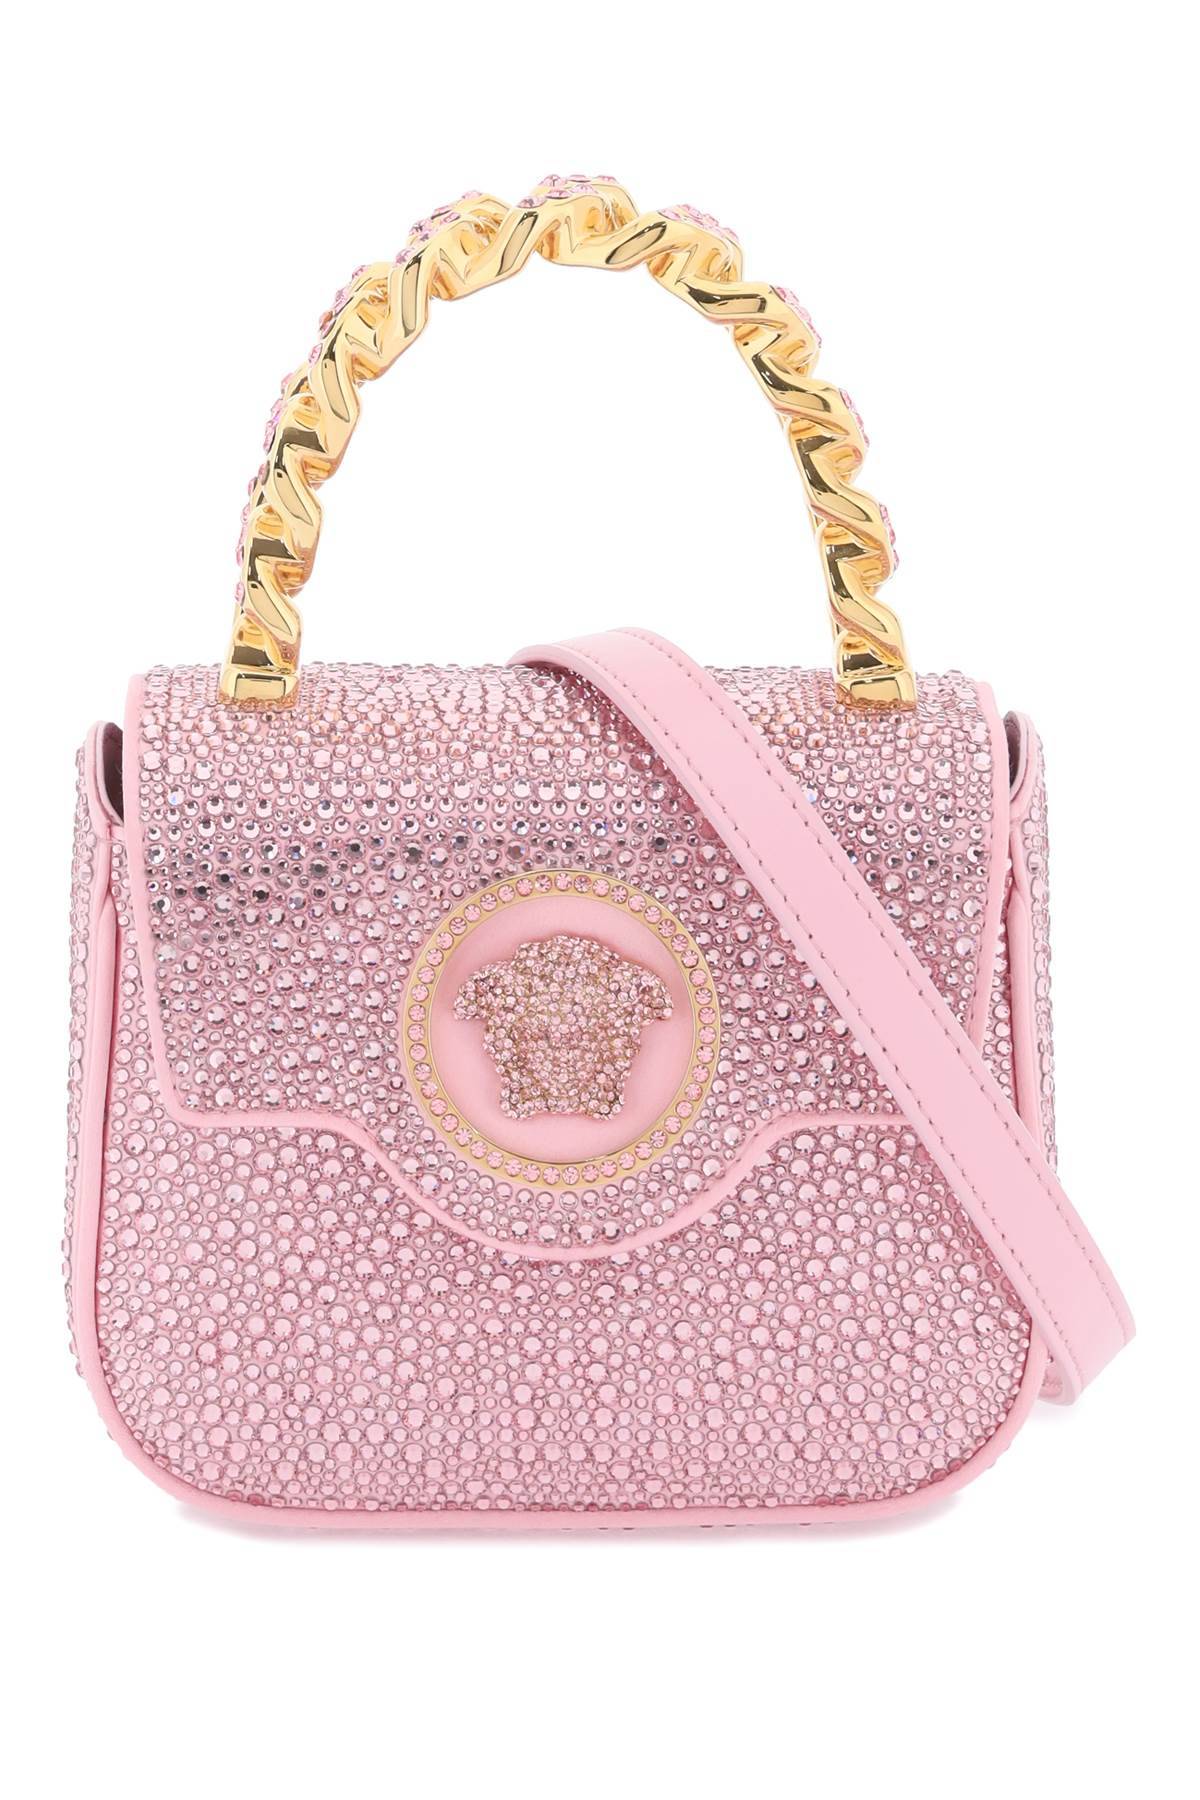 Versace VERSACE la medusa handbag with crystals